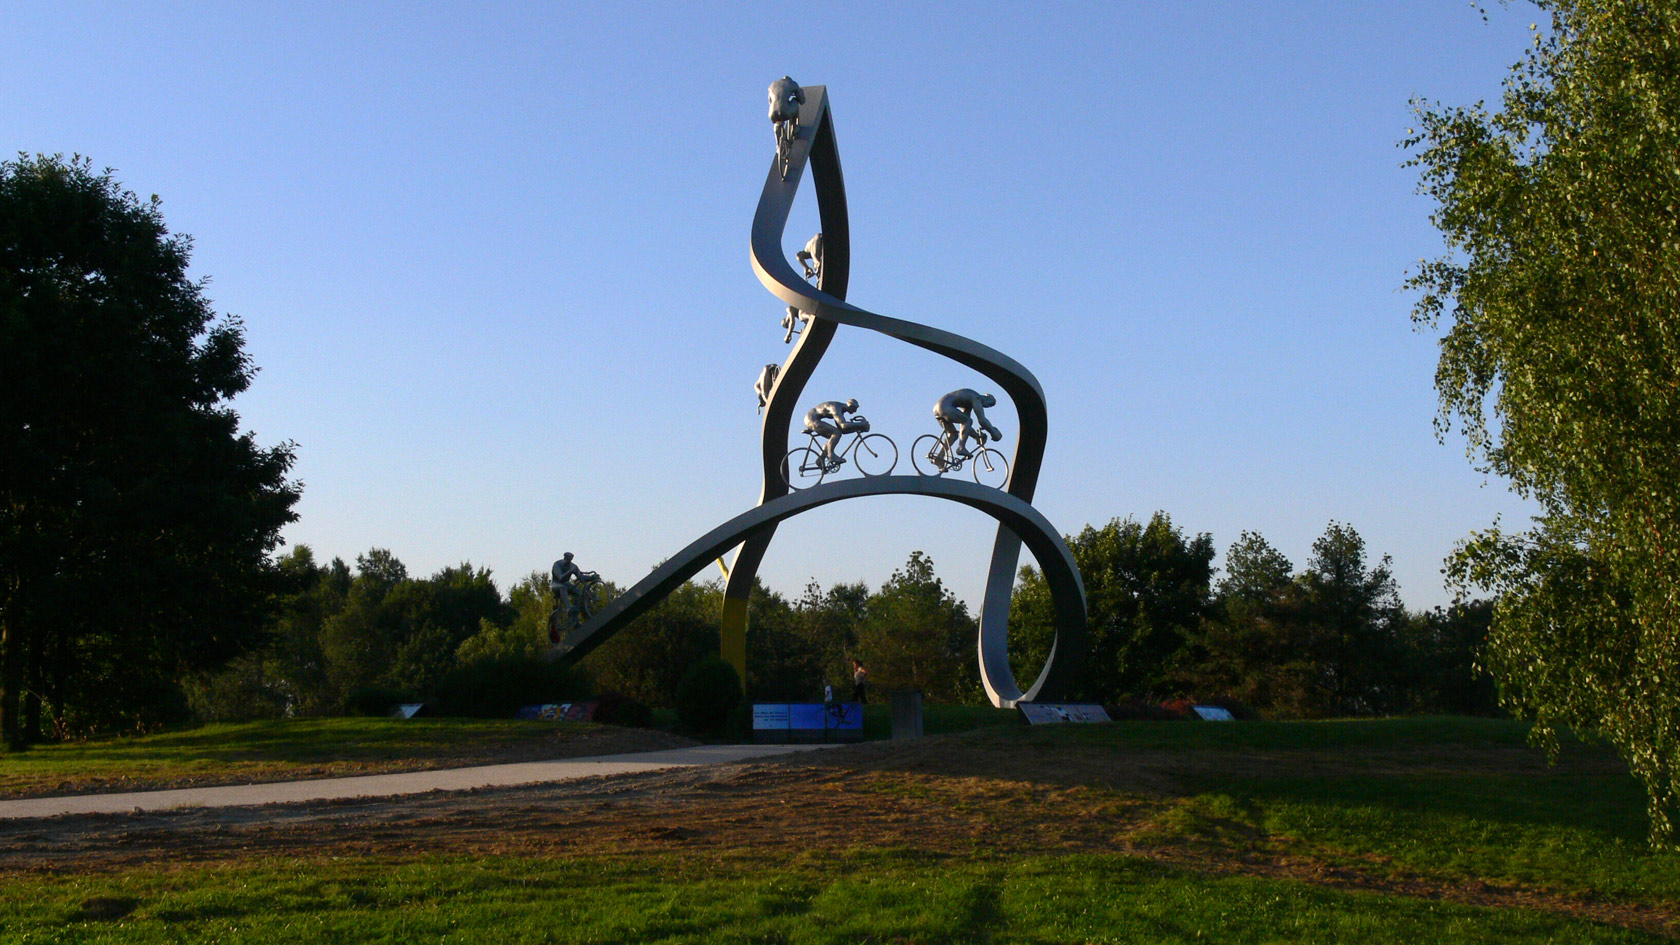 Скульптура Тур де франс, изображение ландшафта.